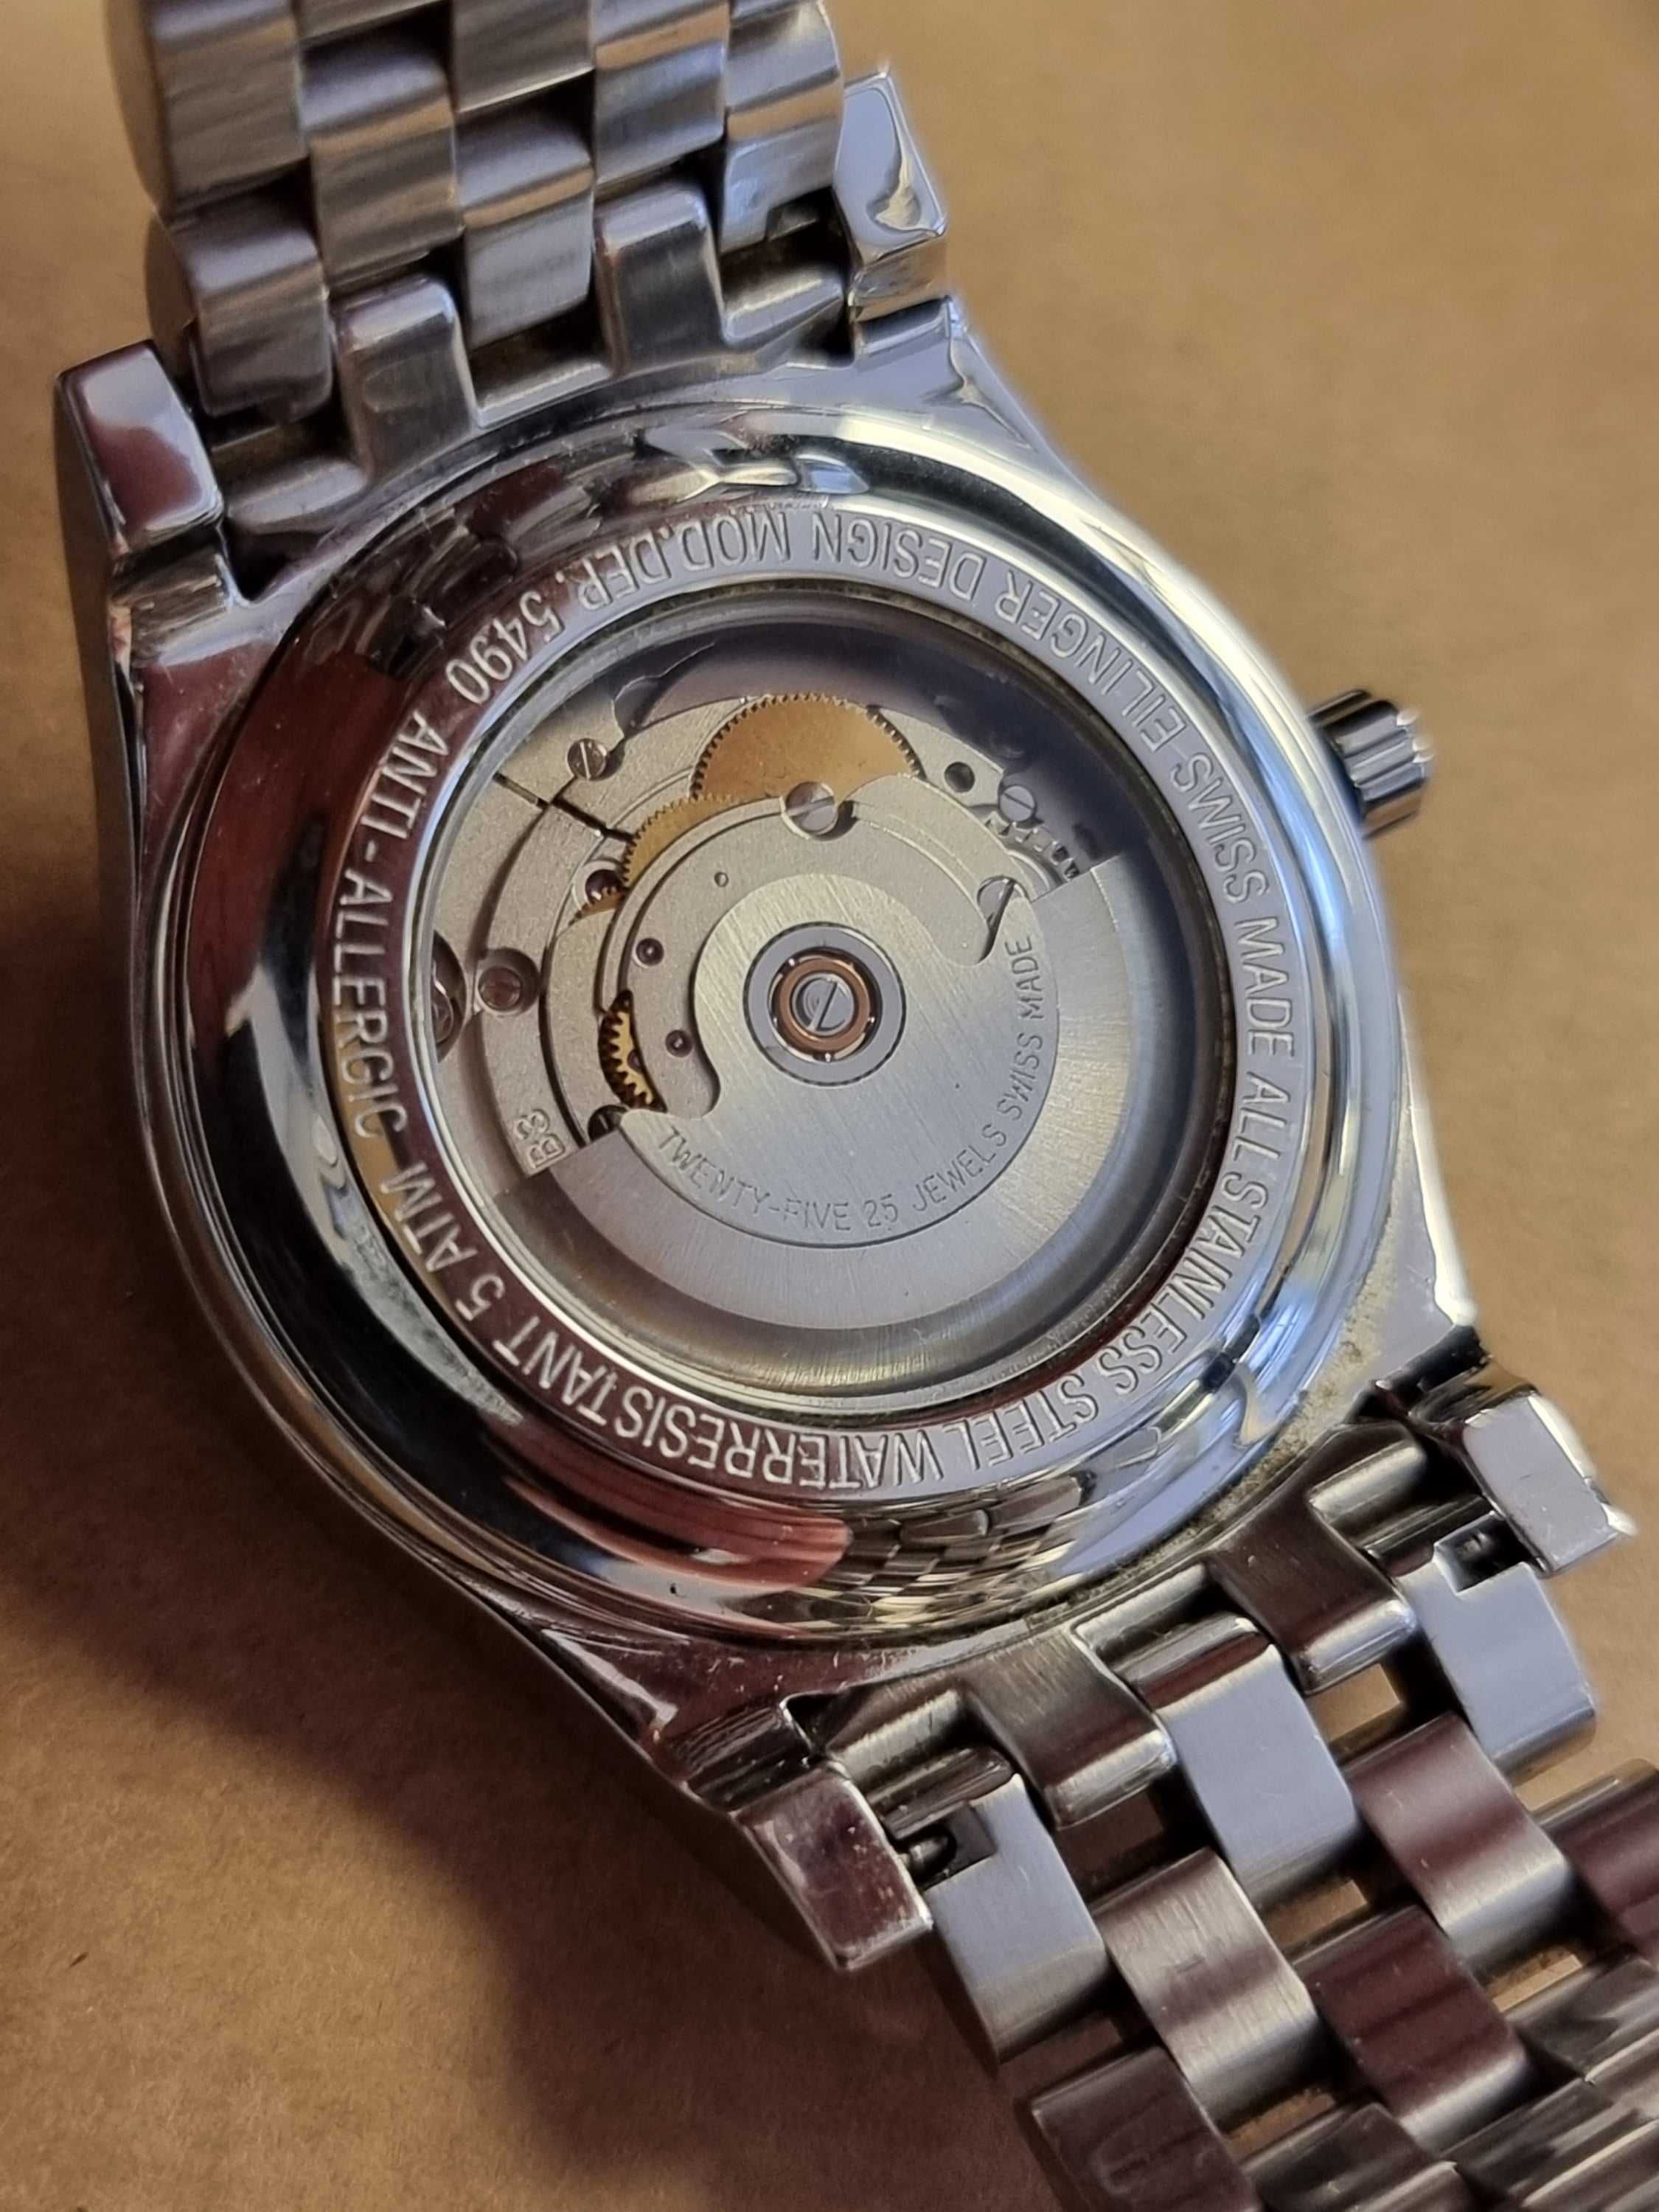 Alfex zegarek automatyczny szwajcarski